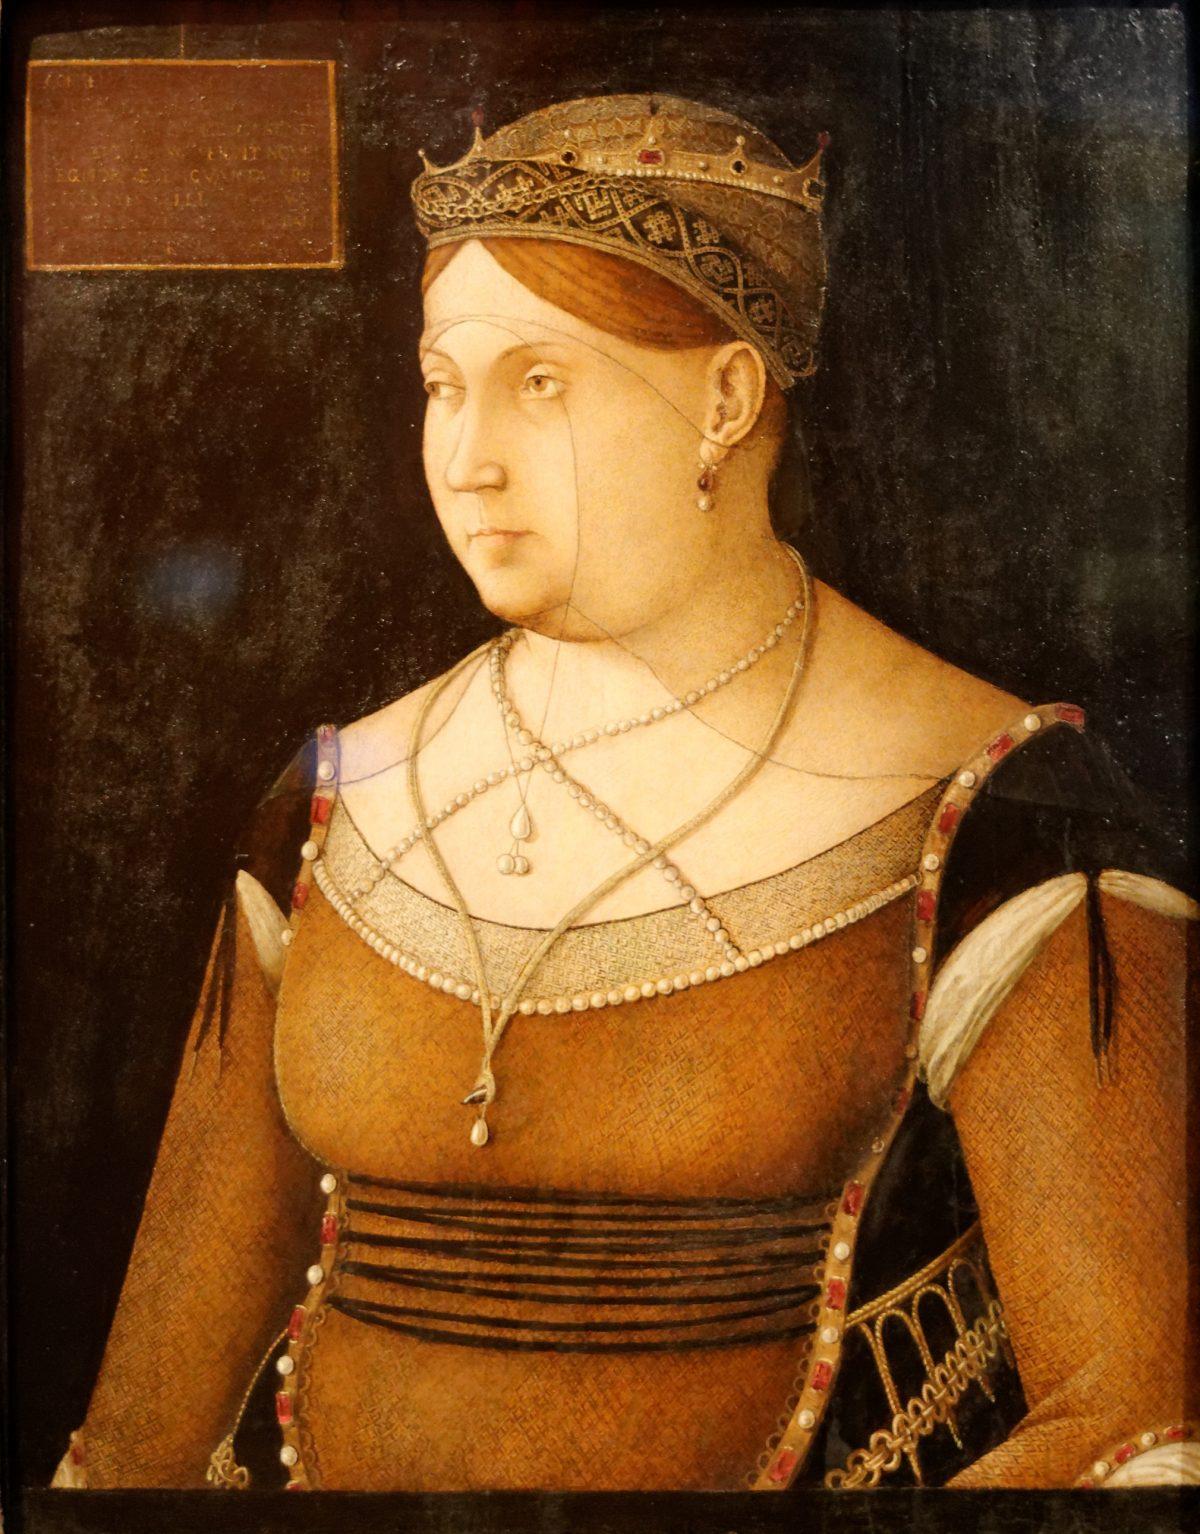 Portrait of Caterina Cornaro by Gentile Bellini, circa 1500. Museum of Fine Arts, Budapest. (Public Domain)